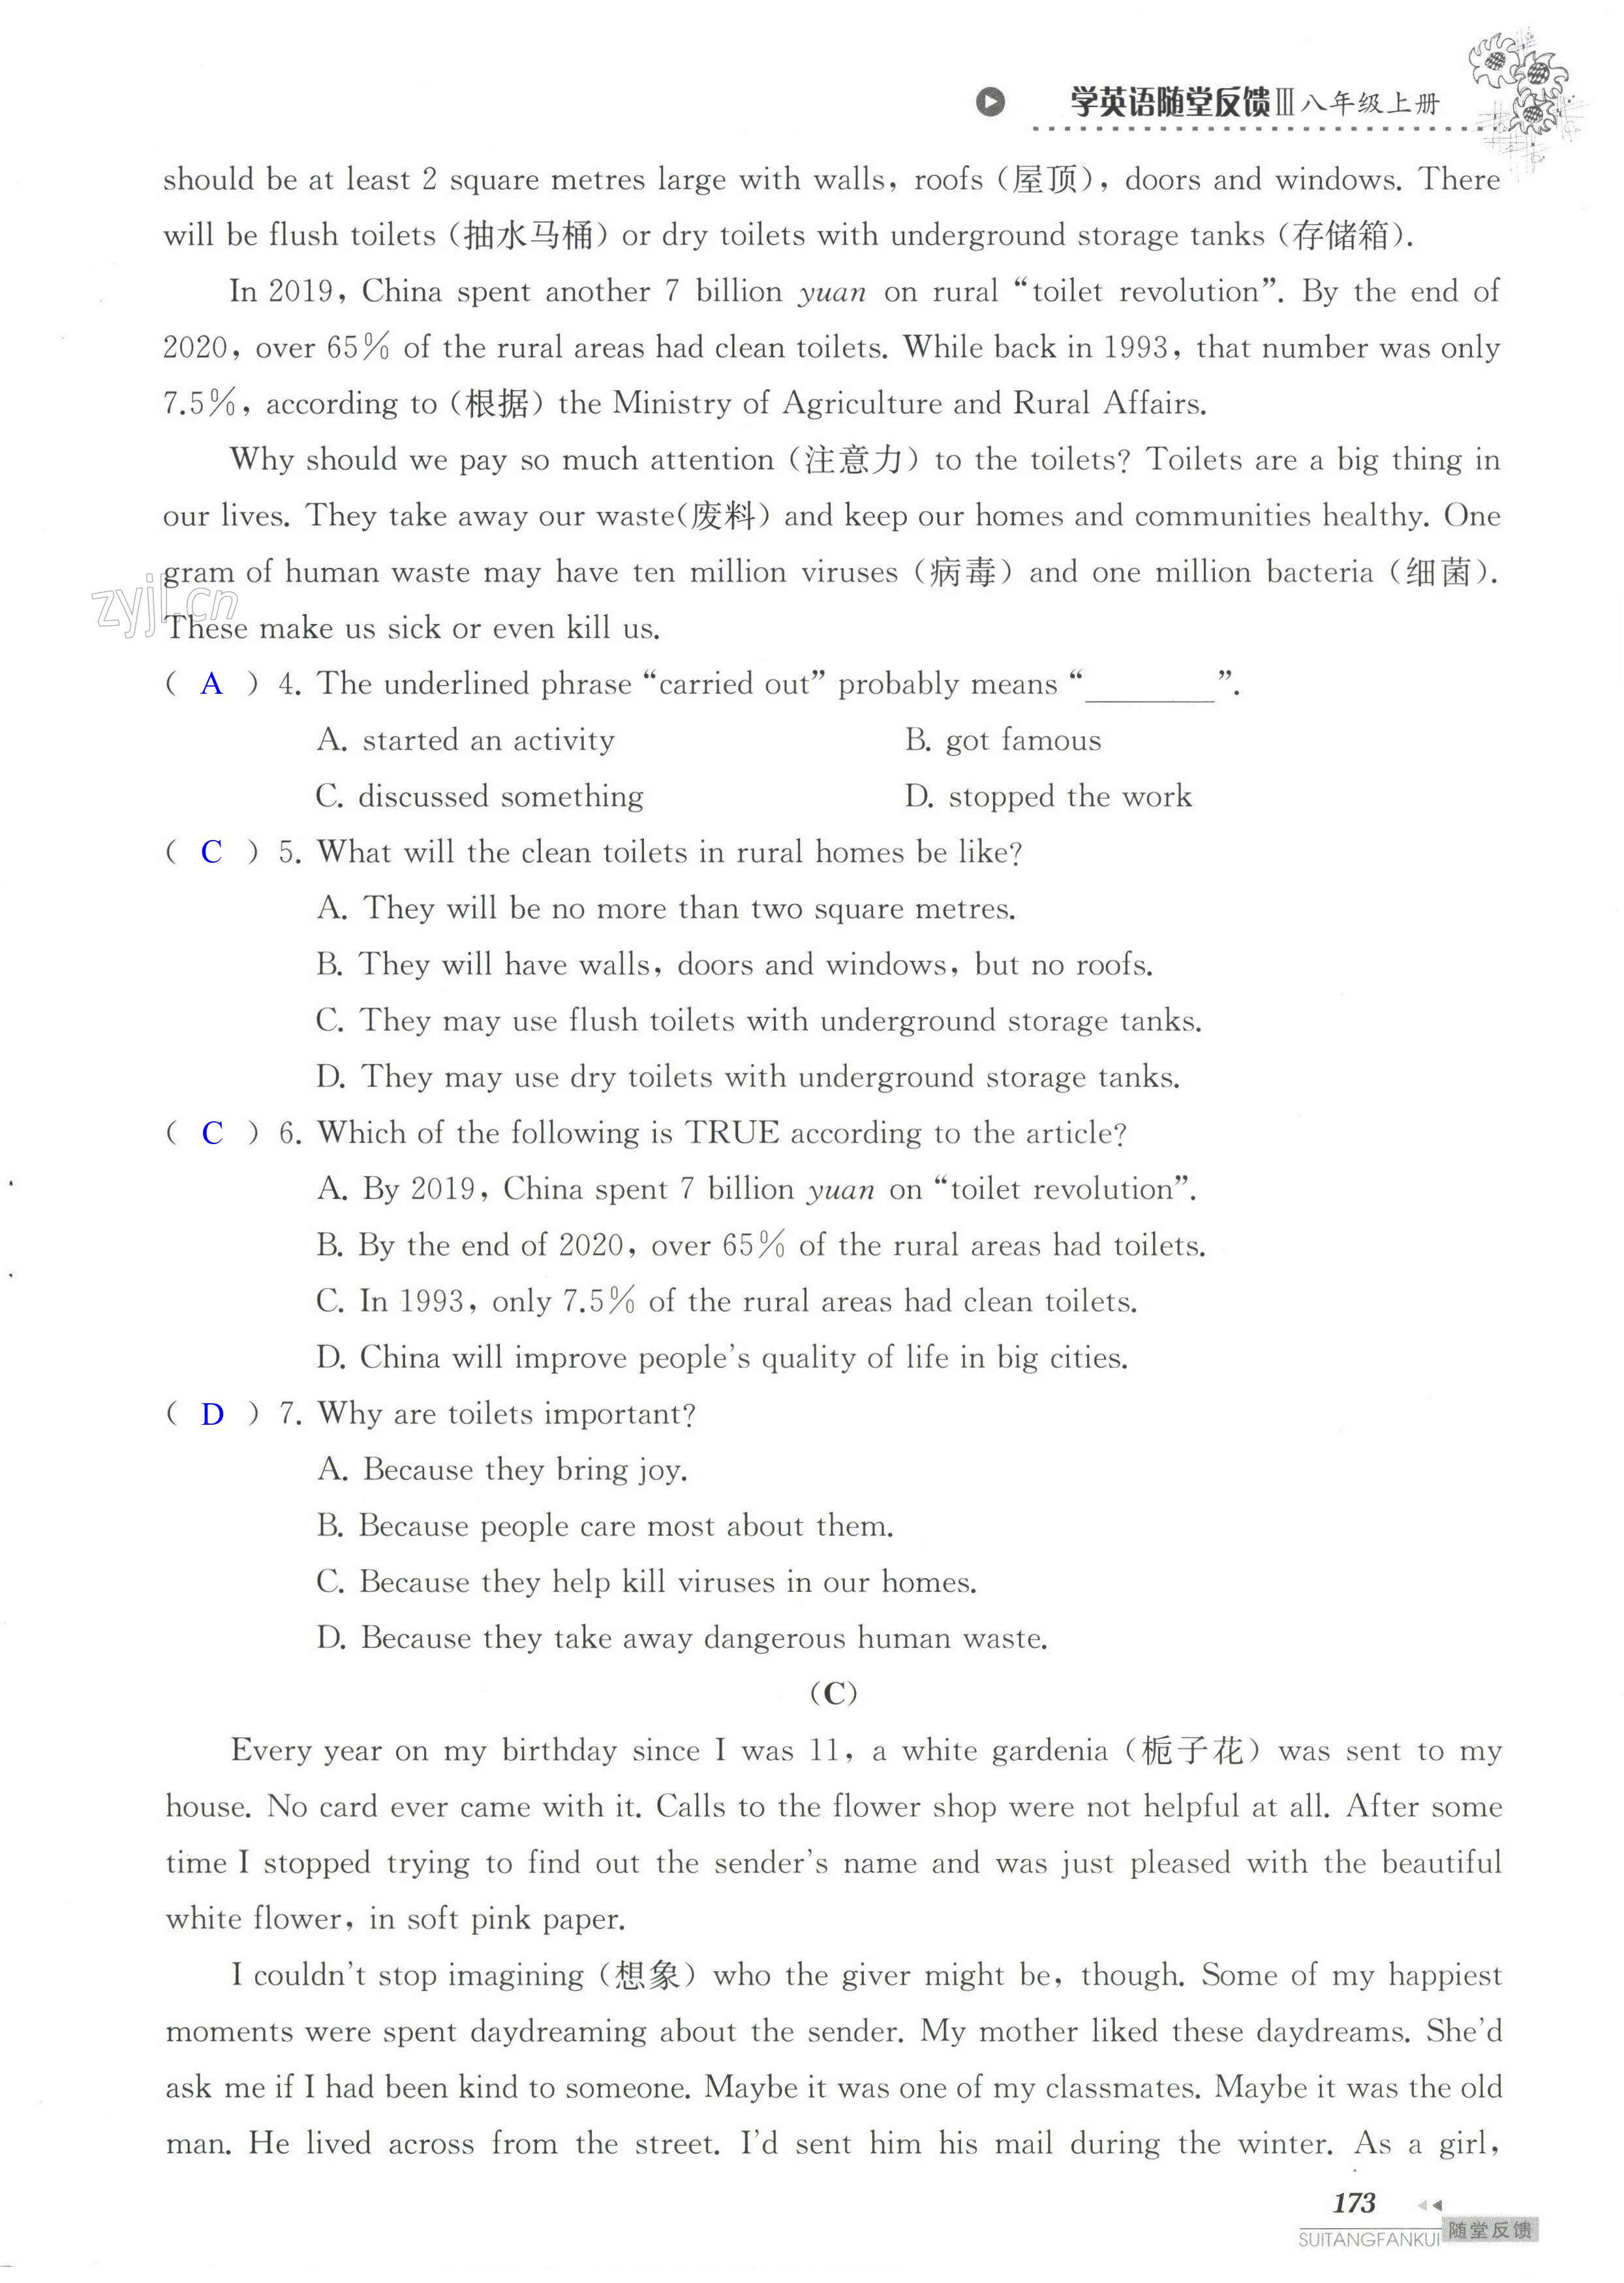 单元综合测试卷 Test for Unit 4 of 8A - 第173页